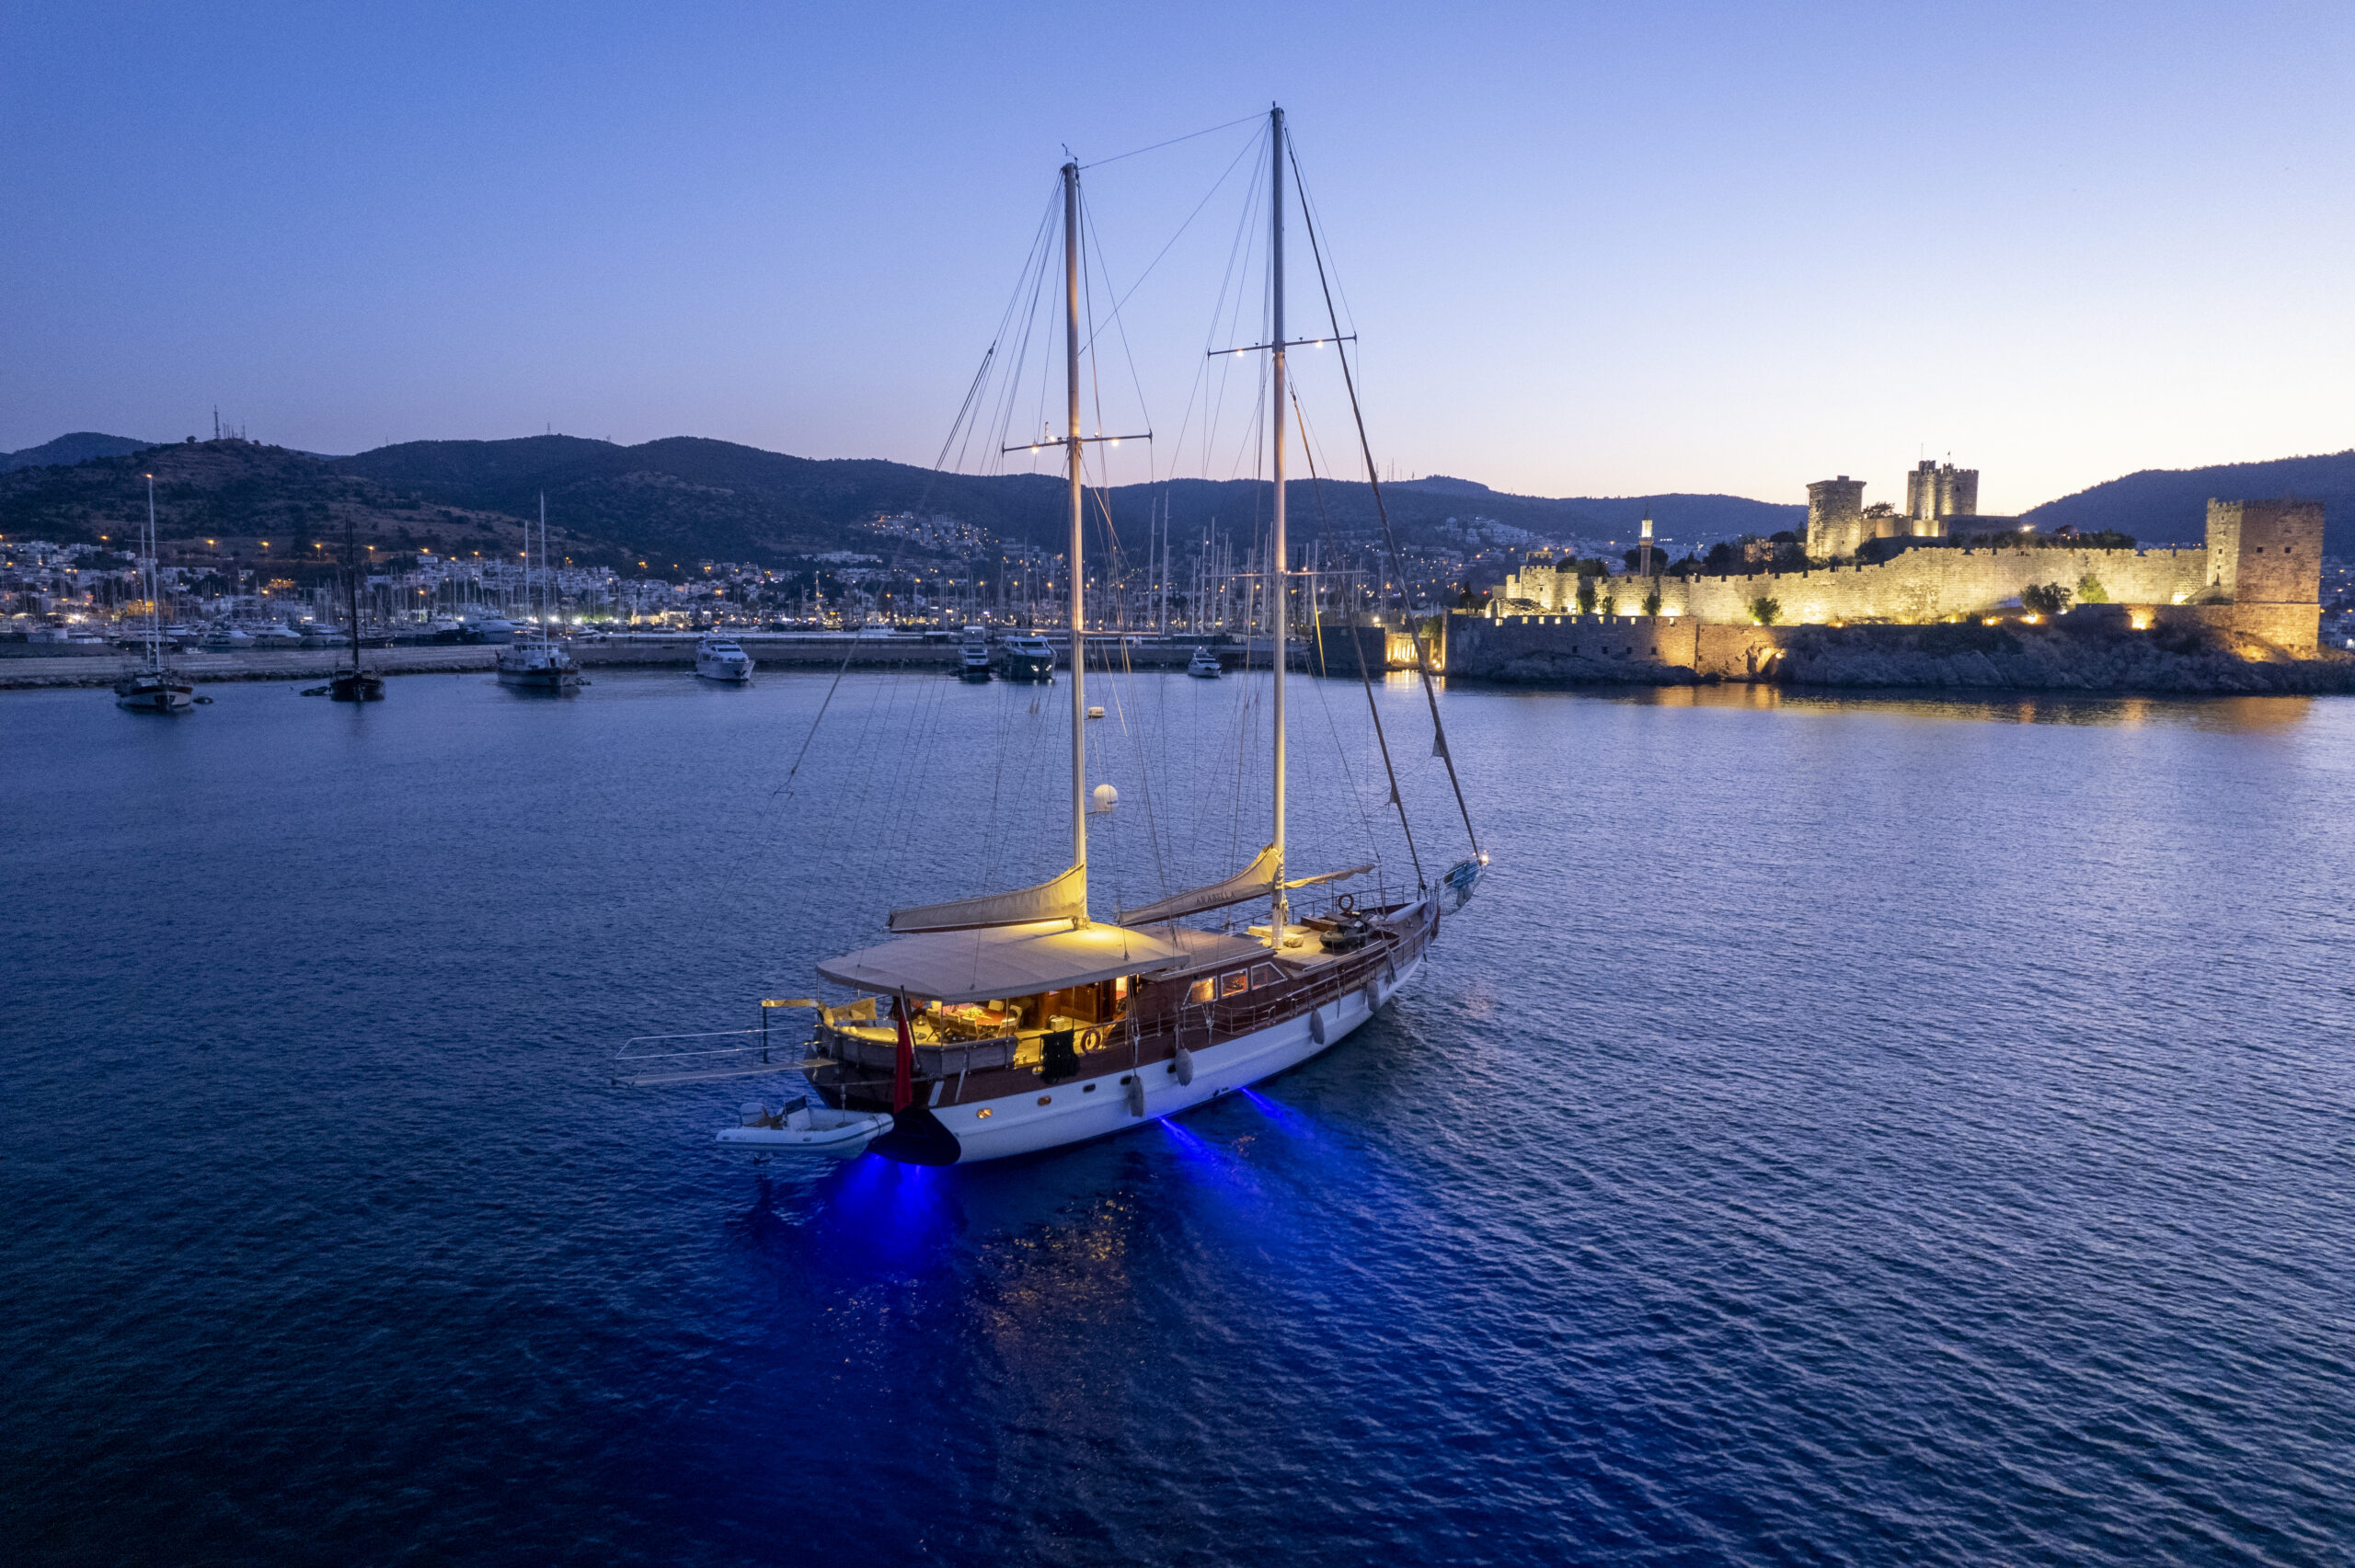 Top 5 Activities on Gulet Cruise in Turkey